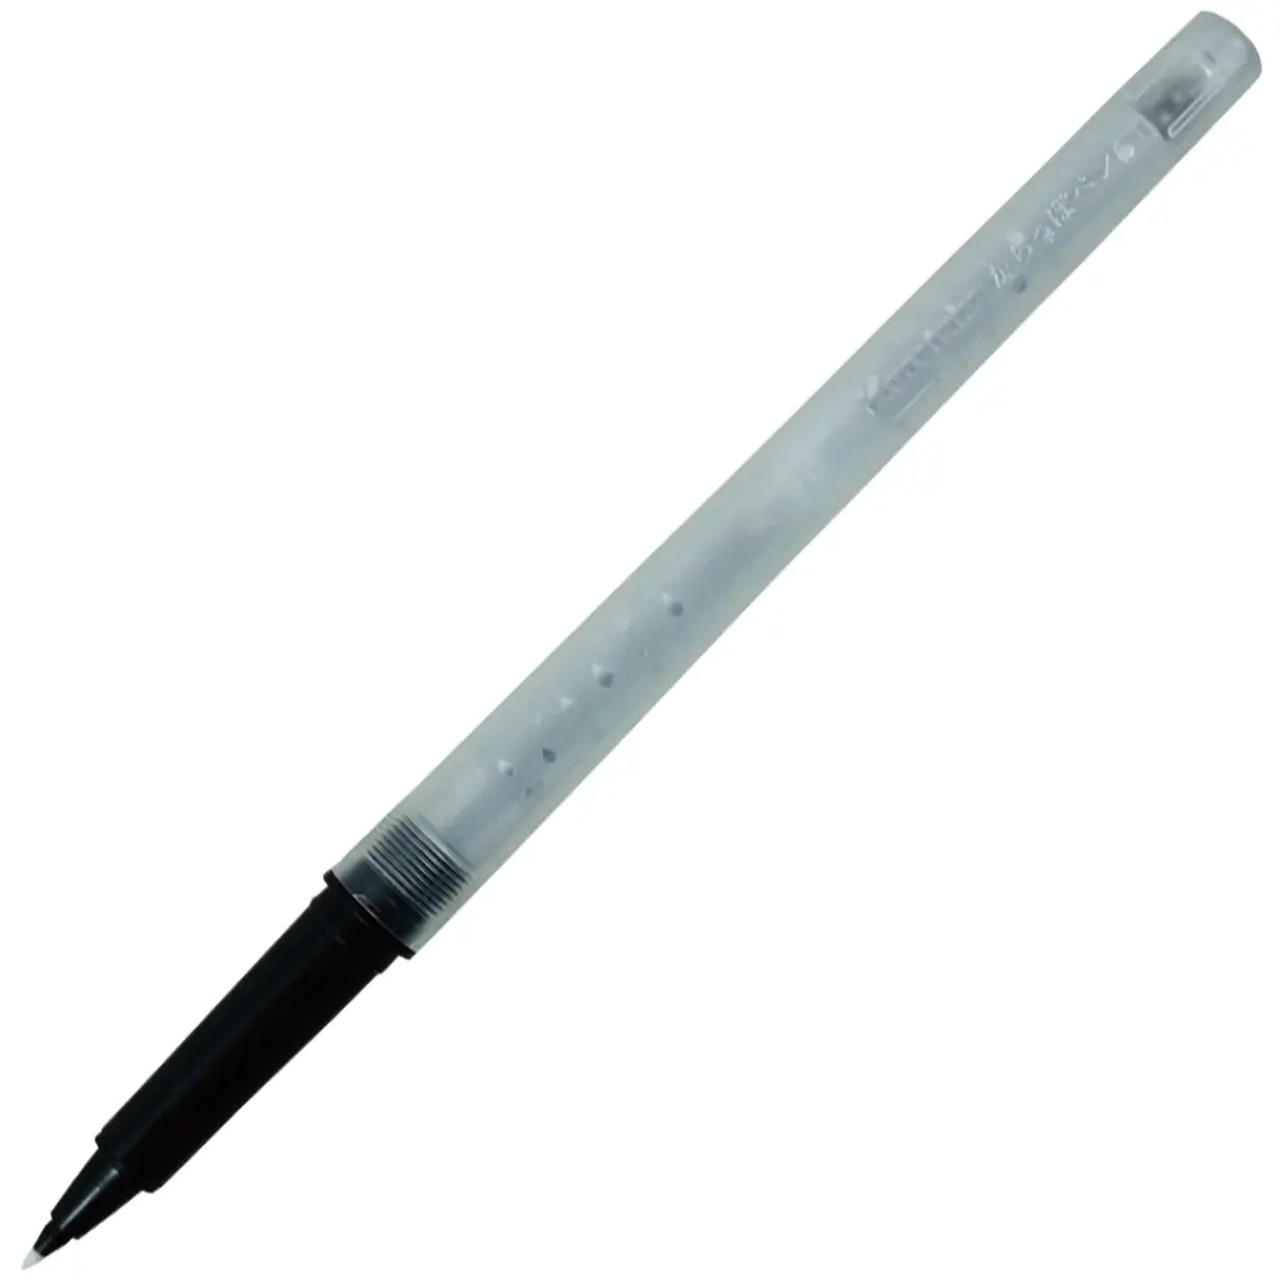 Kuretake Karappo Empty Felt Tip Pen 0.4mm - Pack of 5